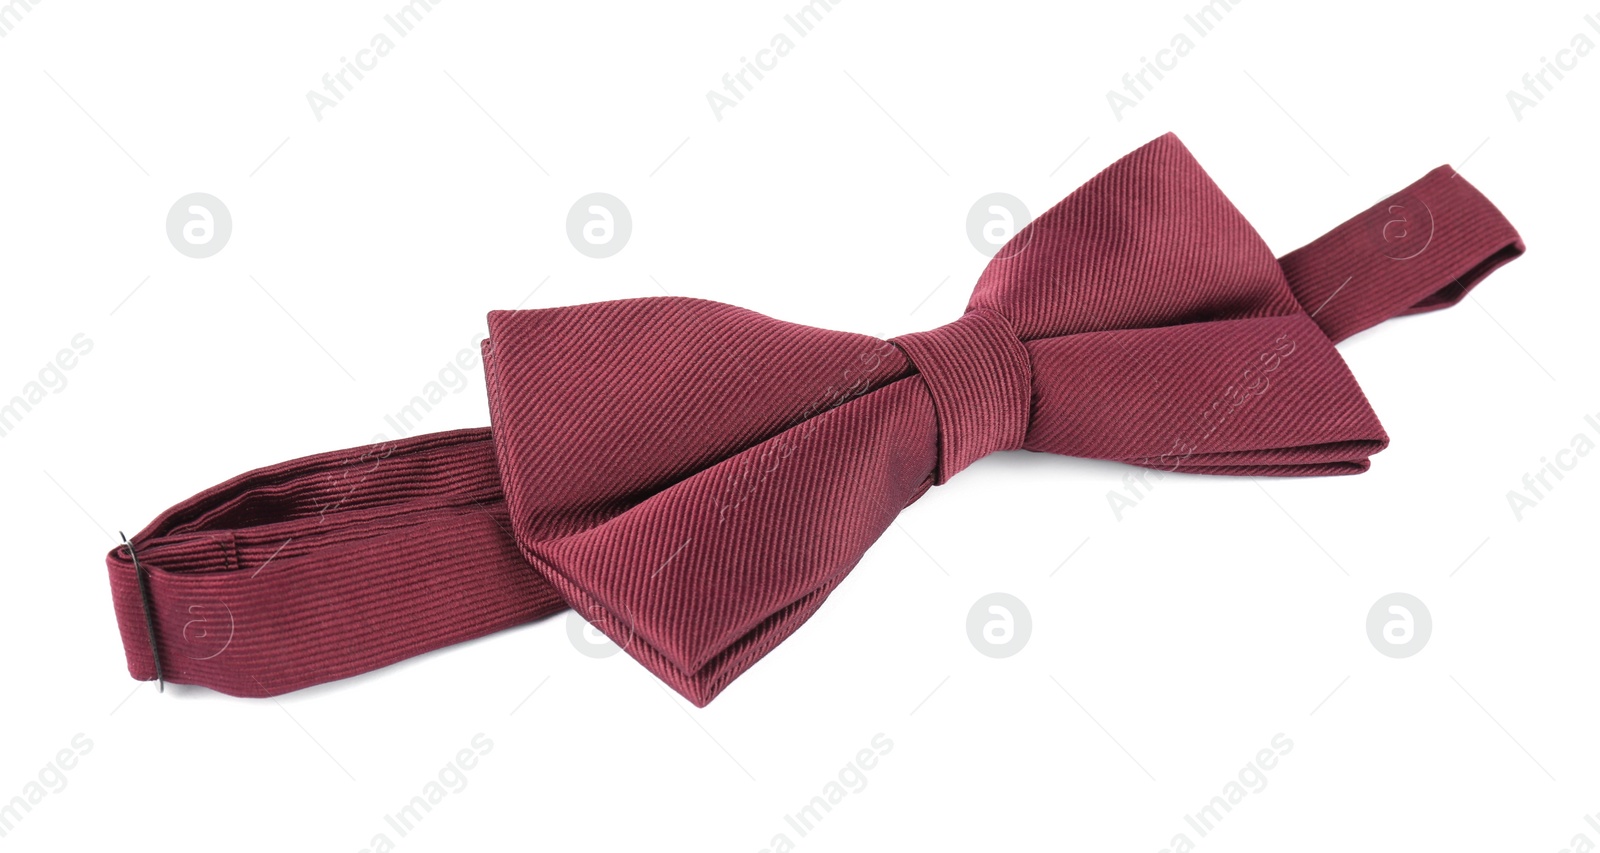 Photo of Stylish burgundy bow tie isolated on white